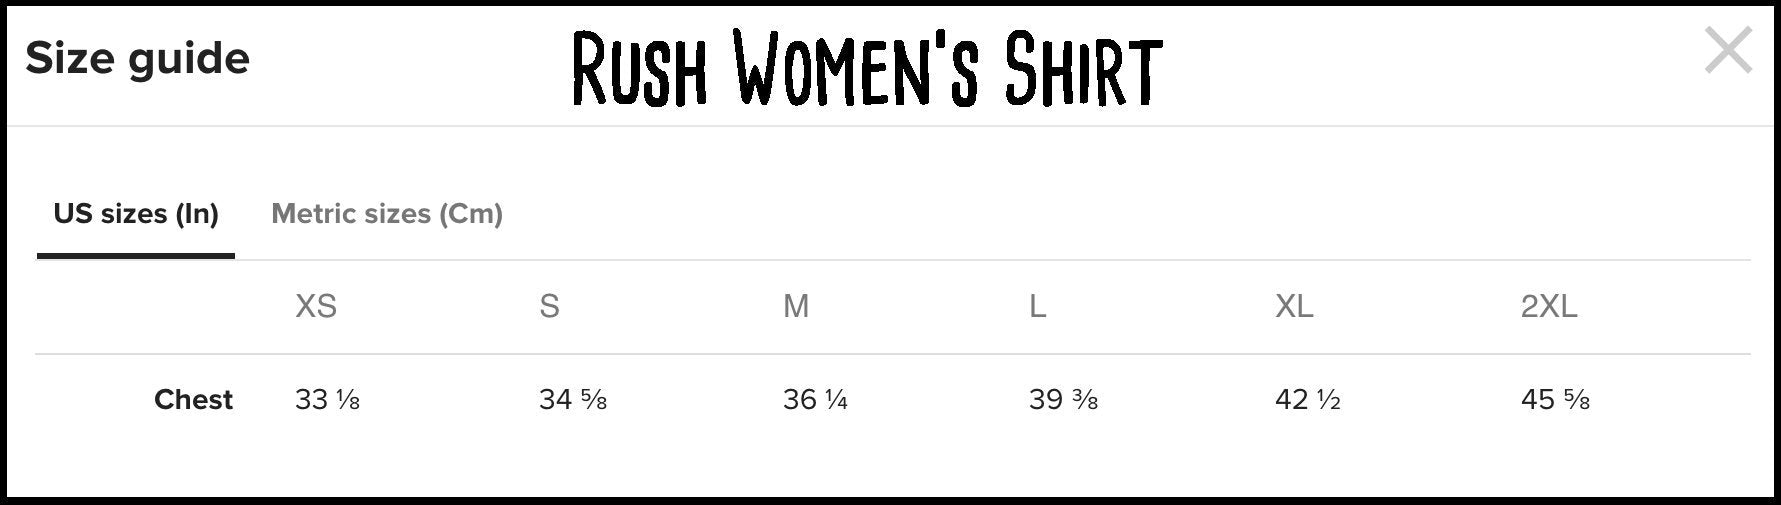 Women&#39;s Loki Thor Inspired Shirt